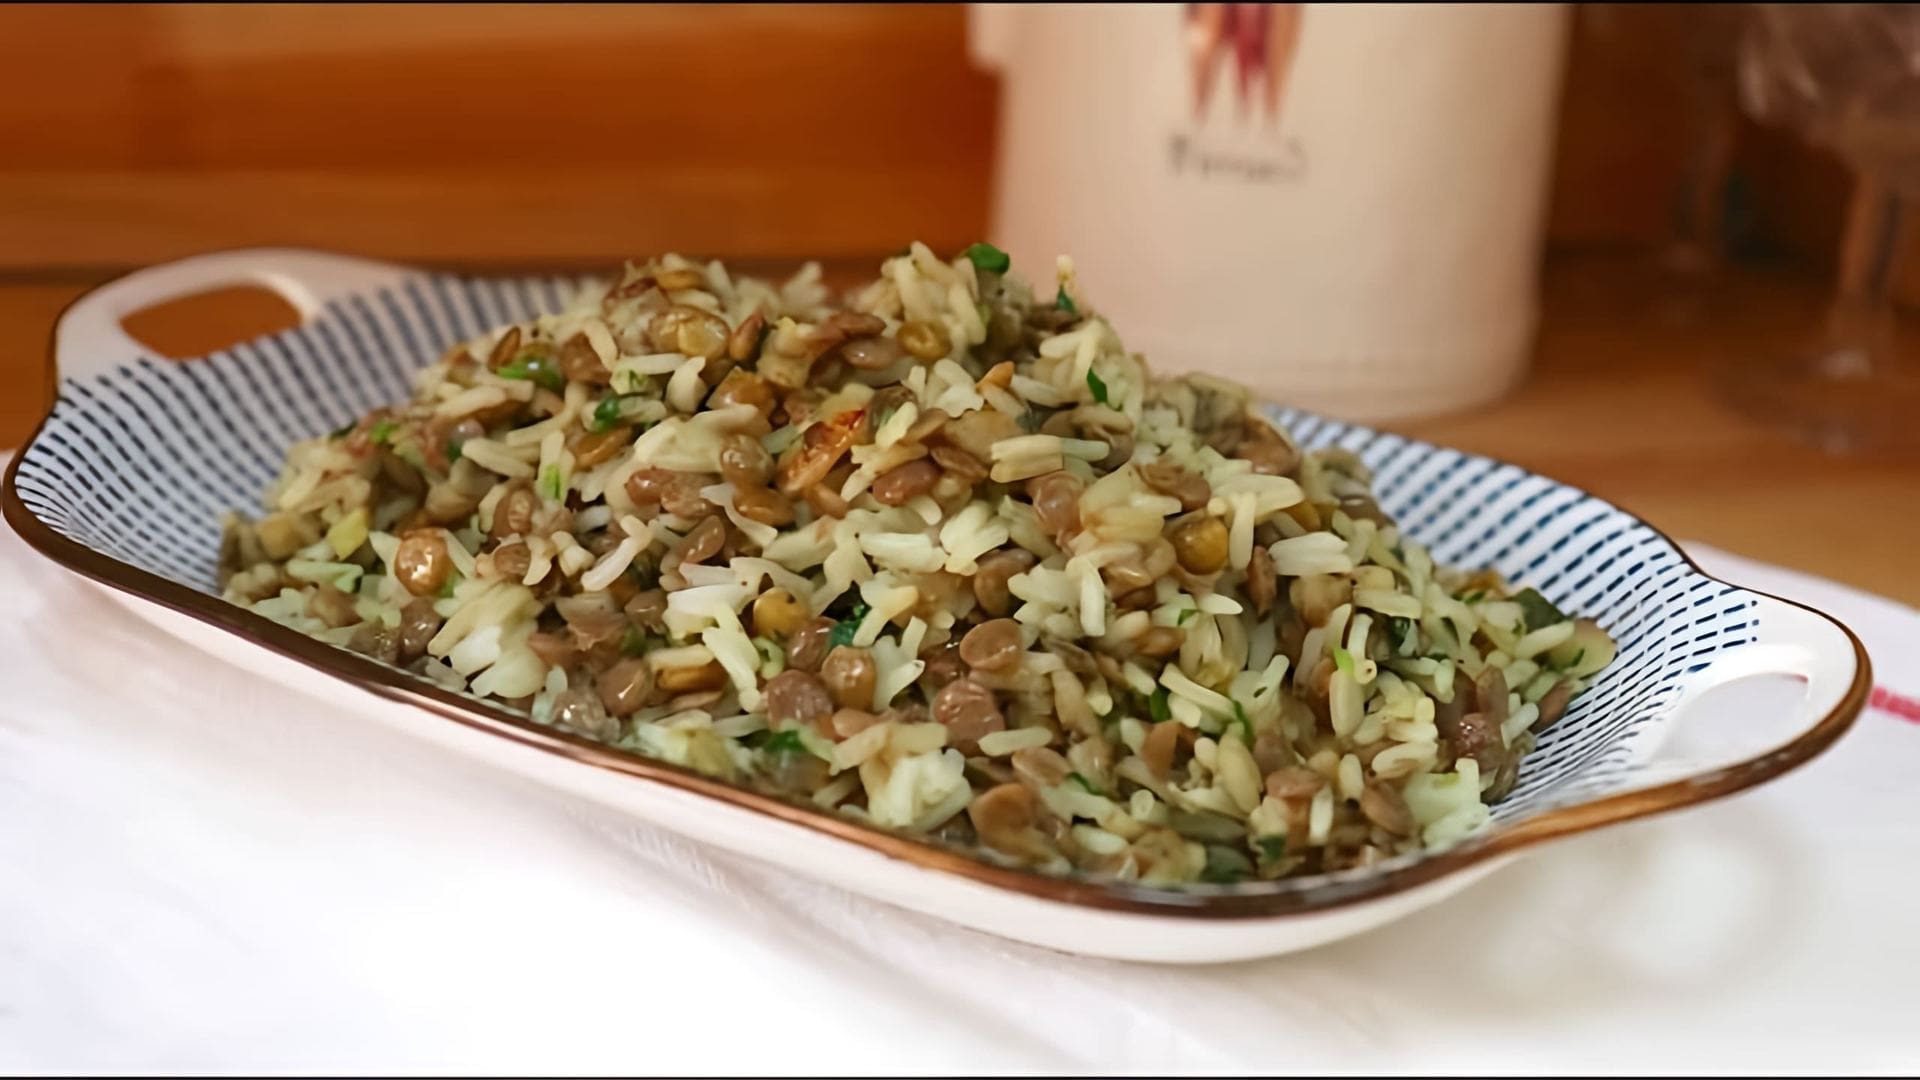 В этом видео демонстрируется процесс приготовления гарнира из риса с чечевицей